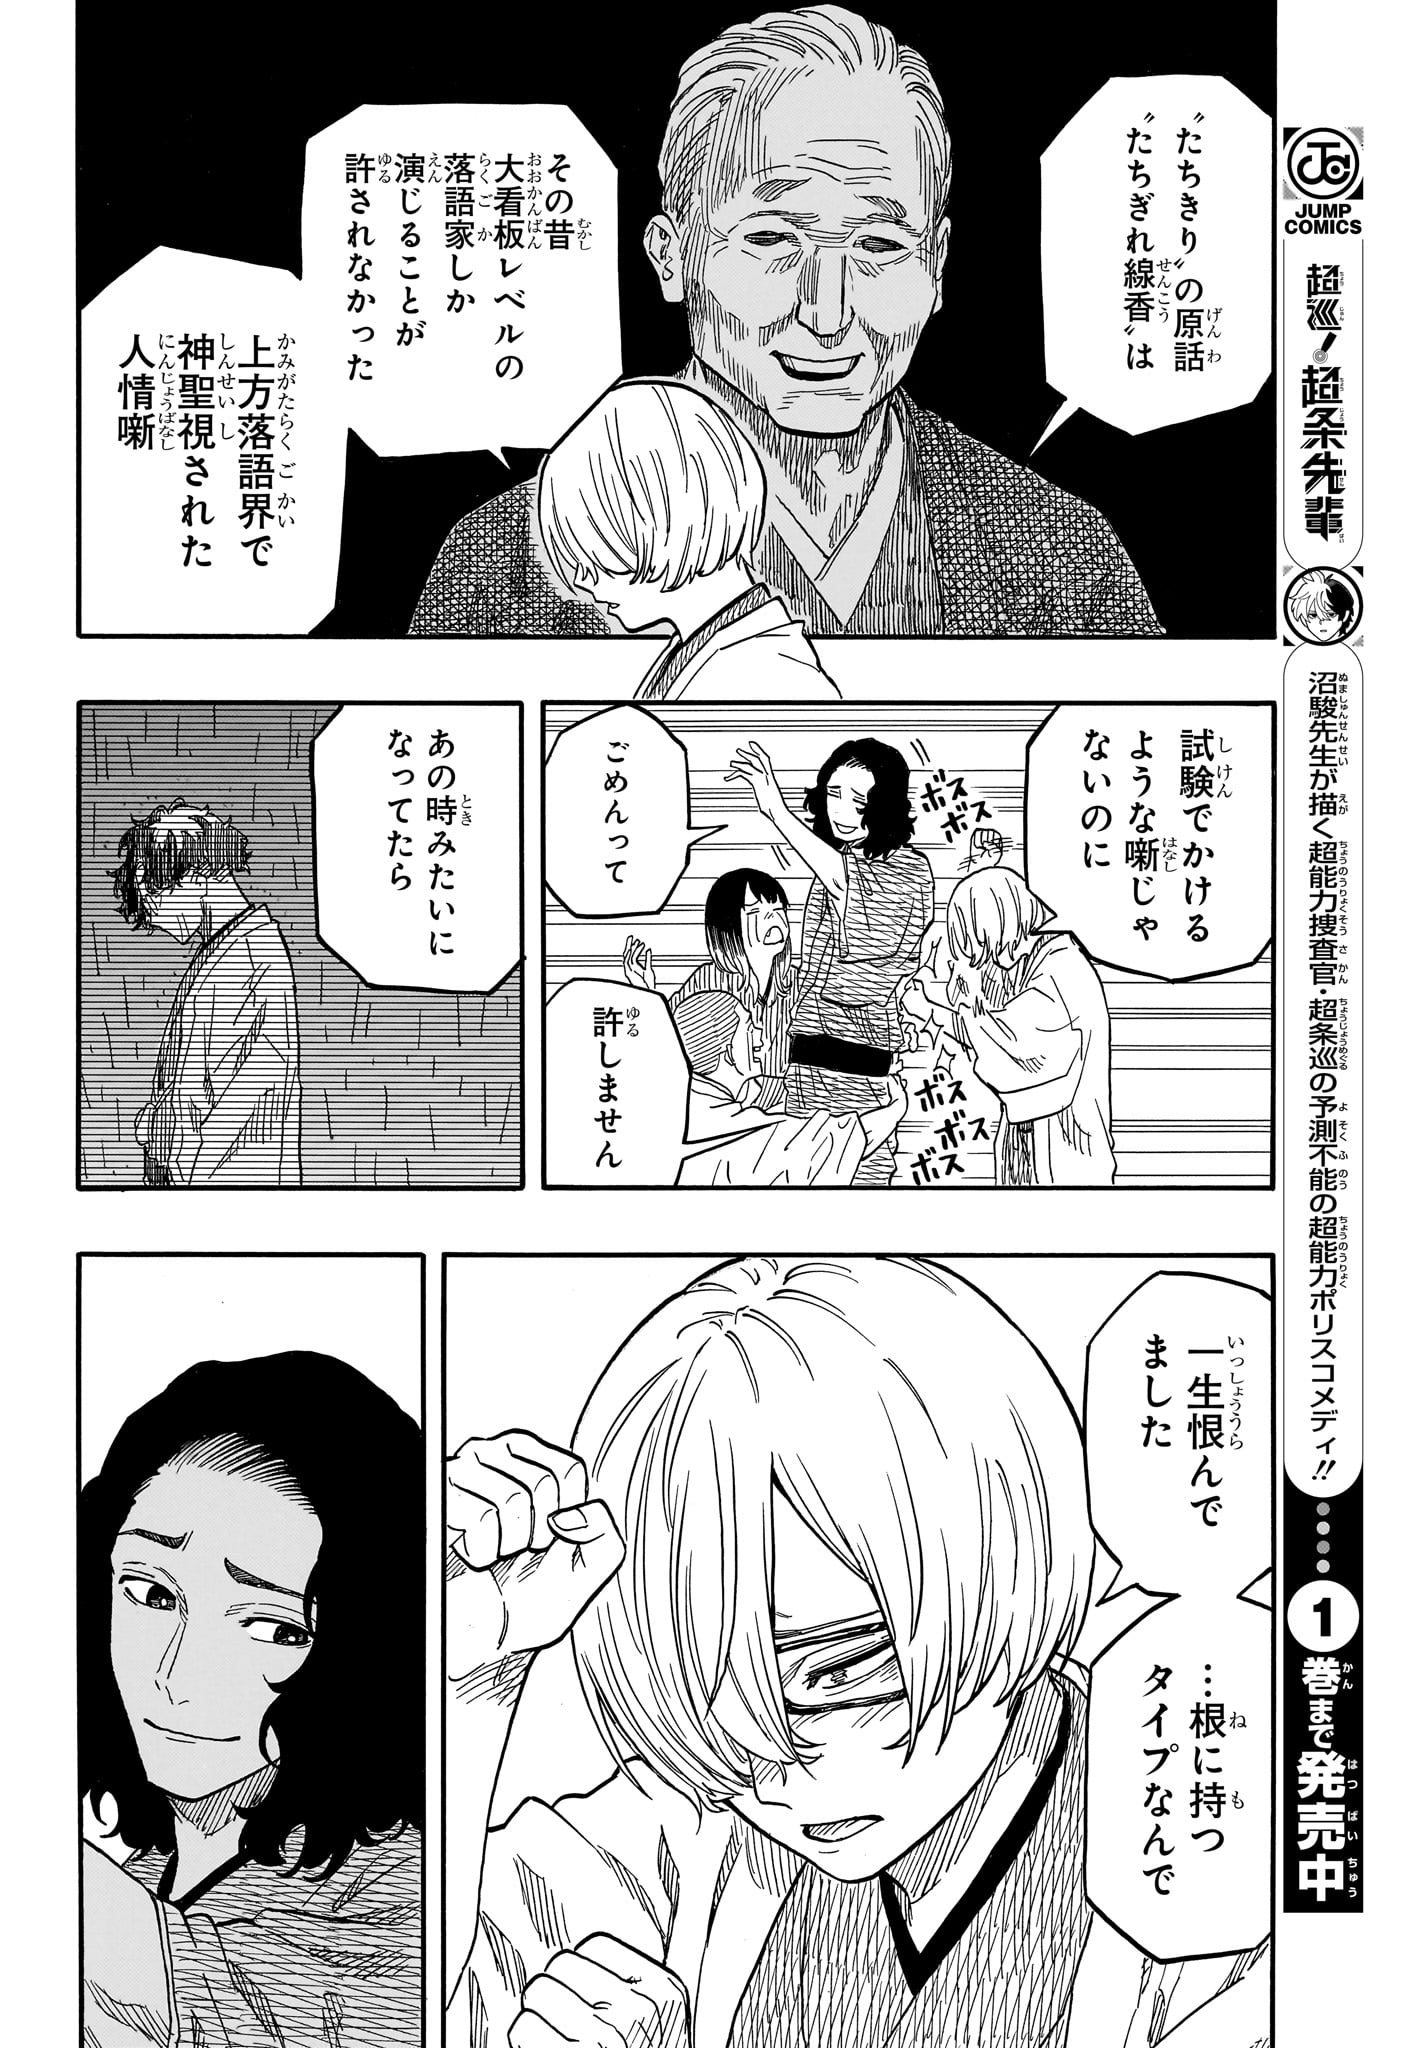 Akane-Banashi - Chapter 117 - Page 6